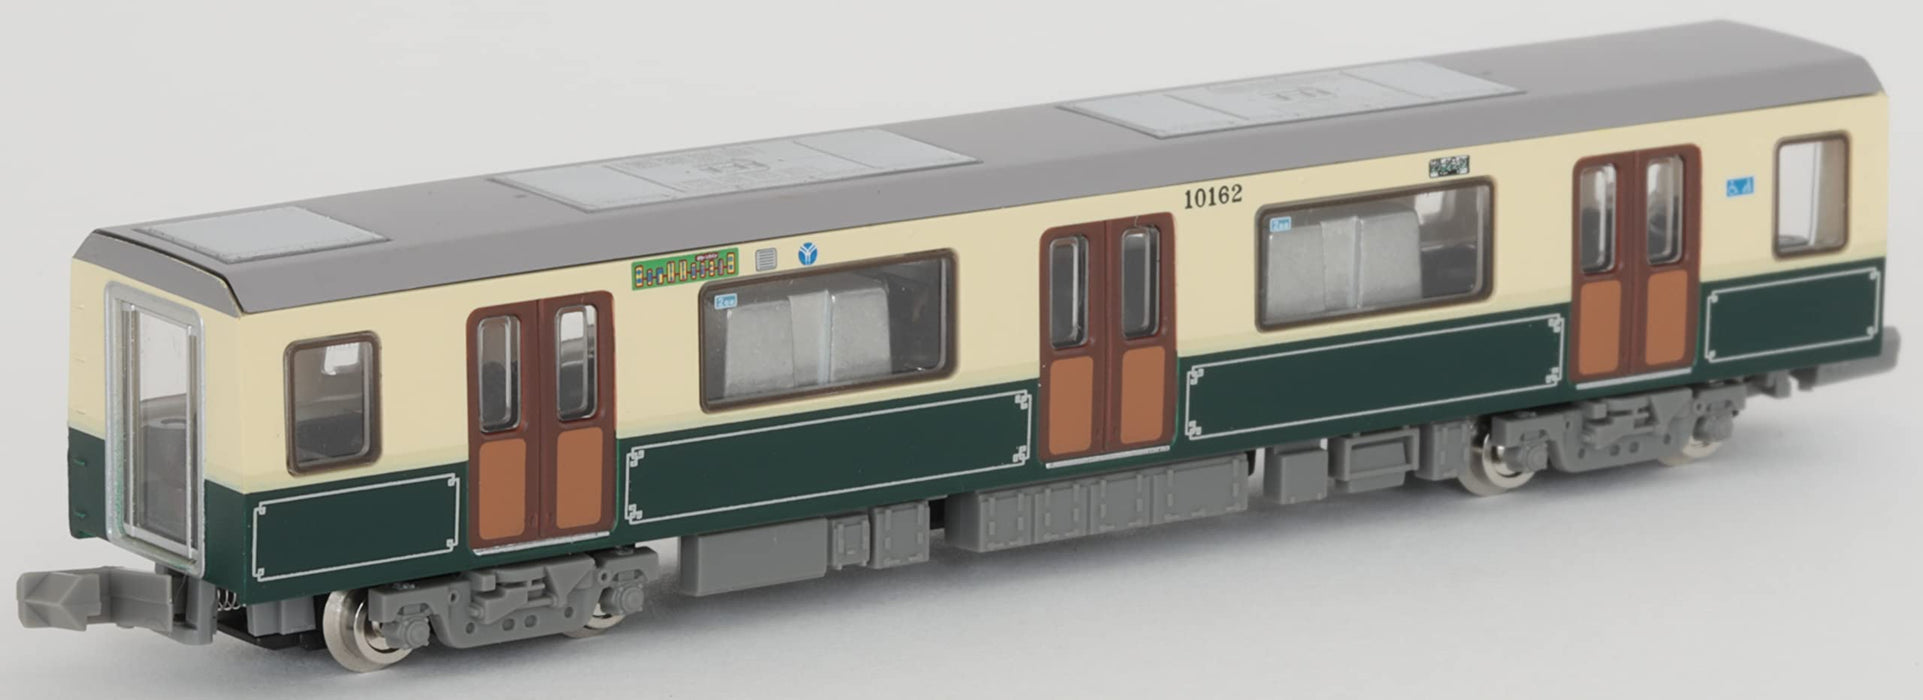 Tomytec Japan Linear Underground Railway Collection Yokohama Grüne Linie 10000 Typ 2. Wagen 10. Jahrestag 4-Wagen-Set B 316466